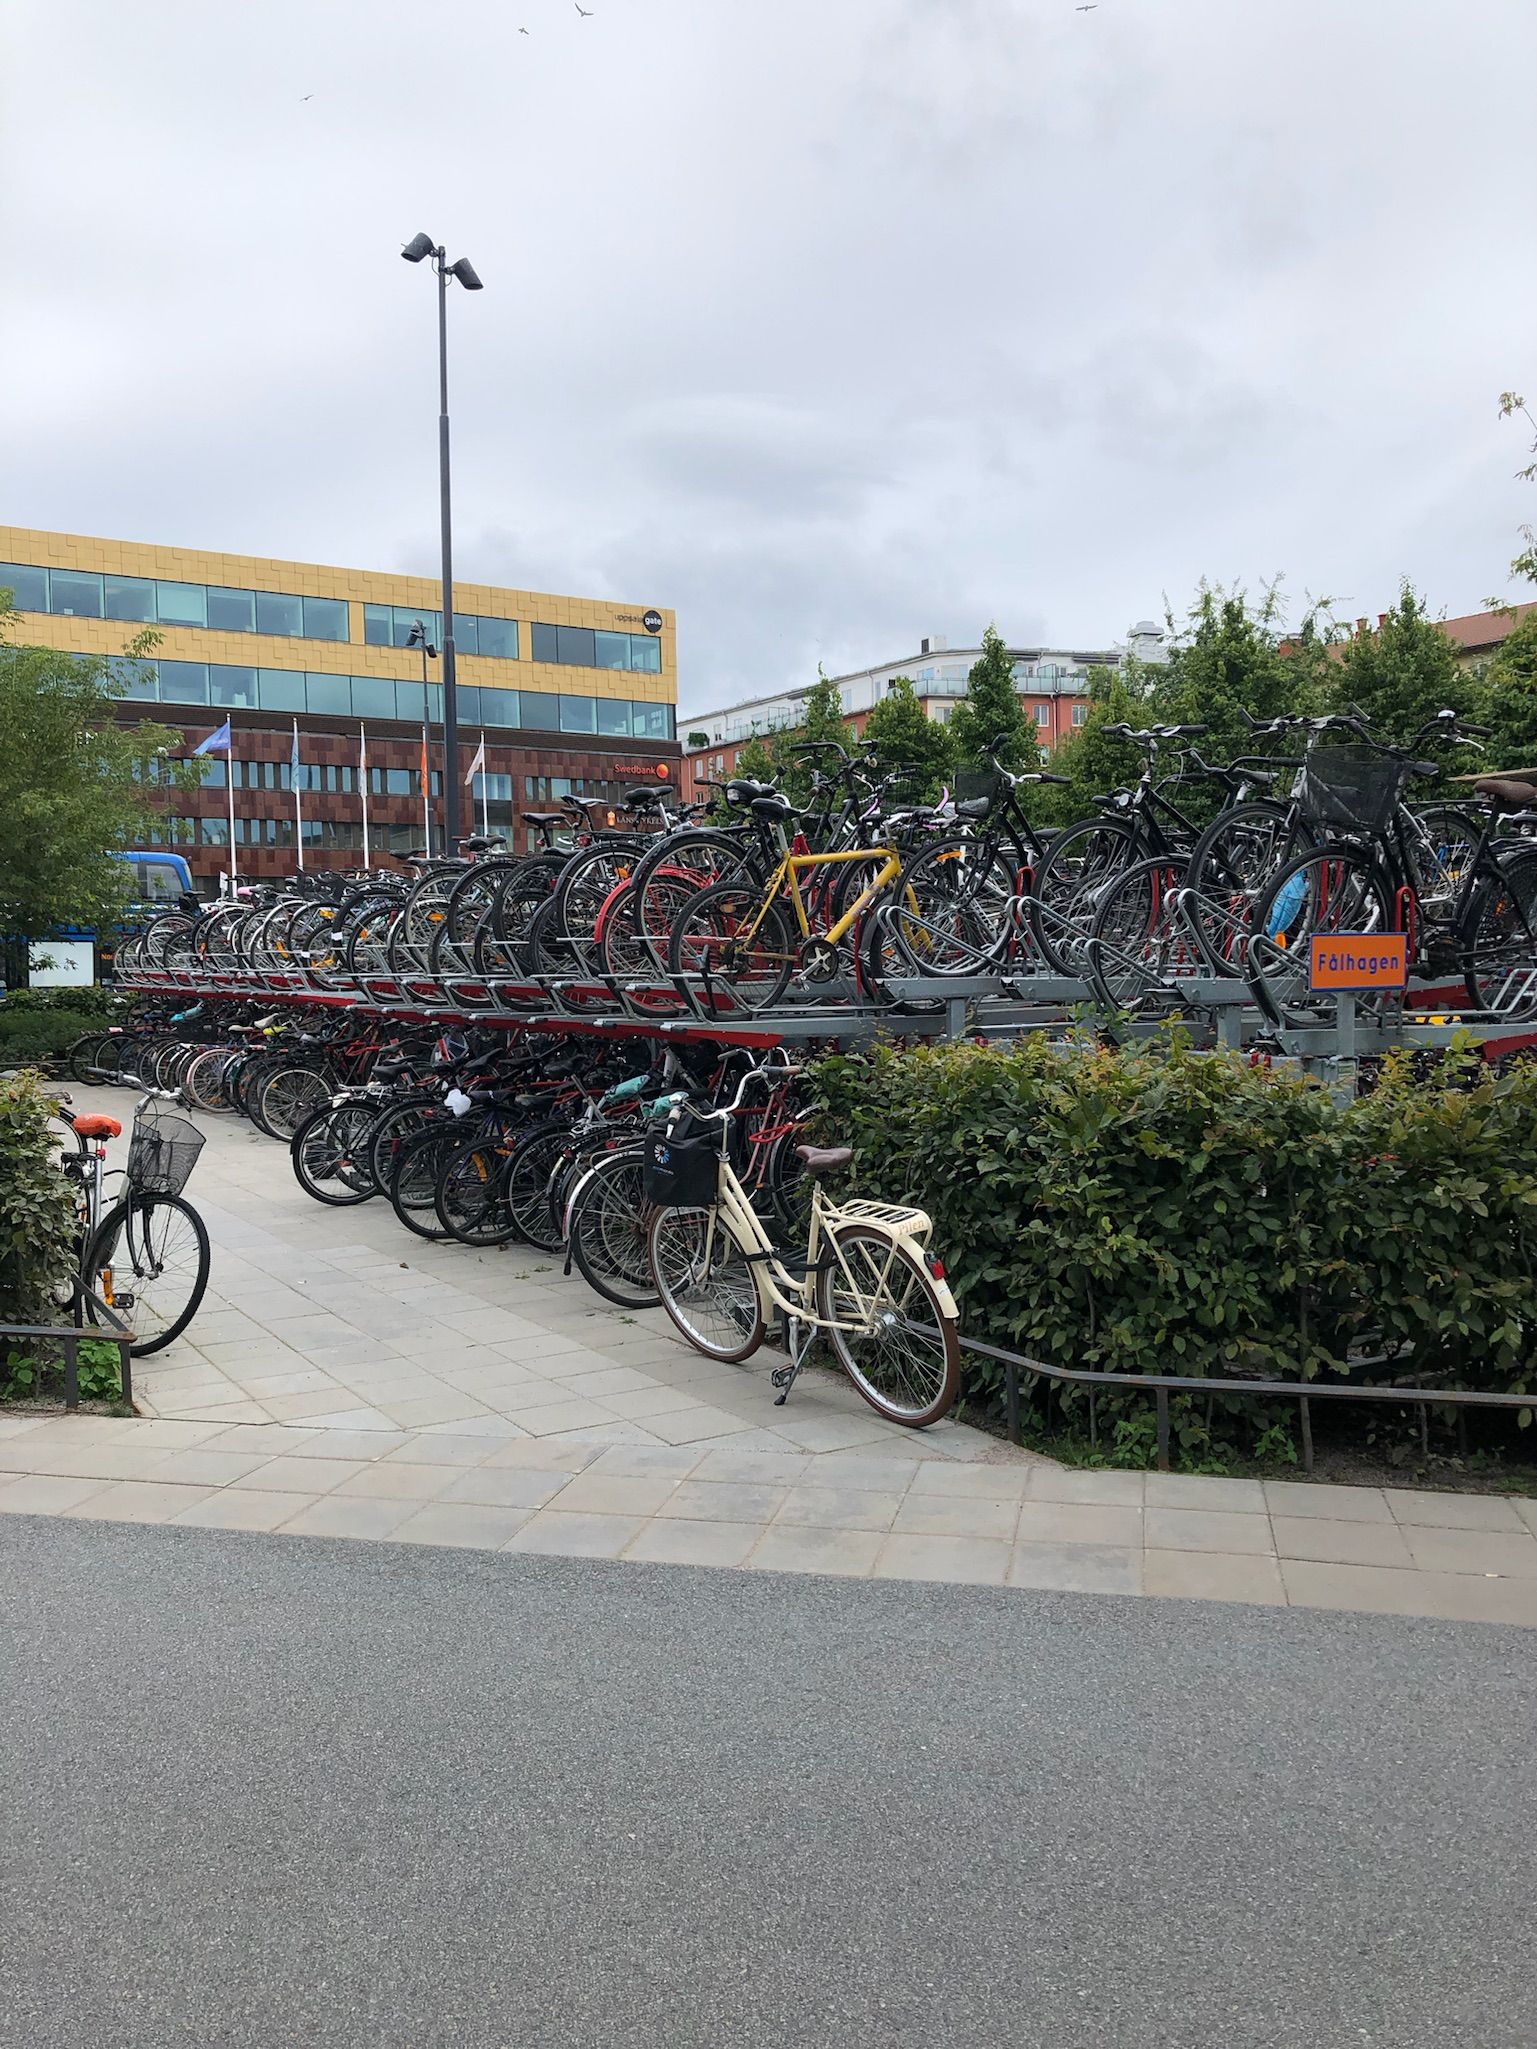 Exchange in Uppsala - Part 4: Exploring the City